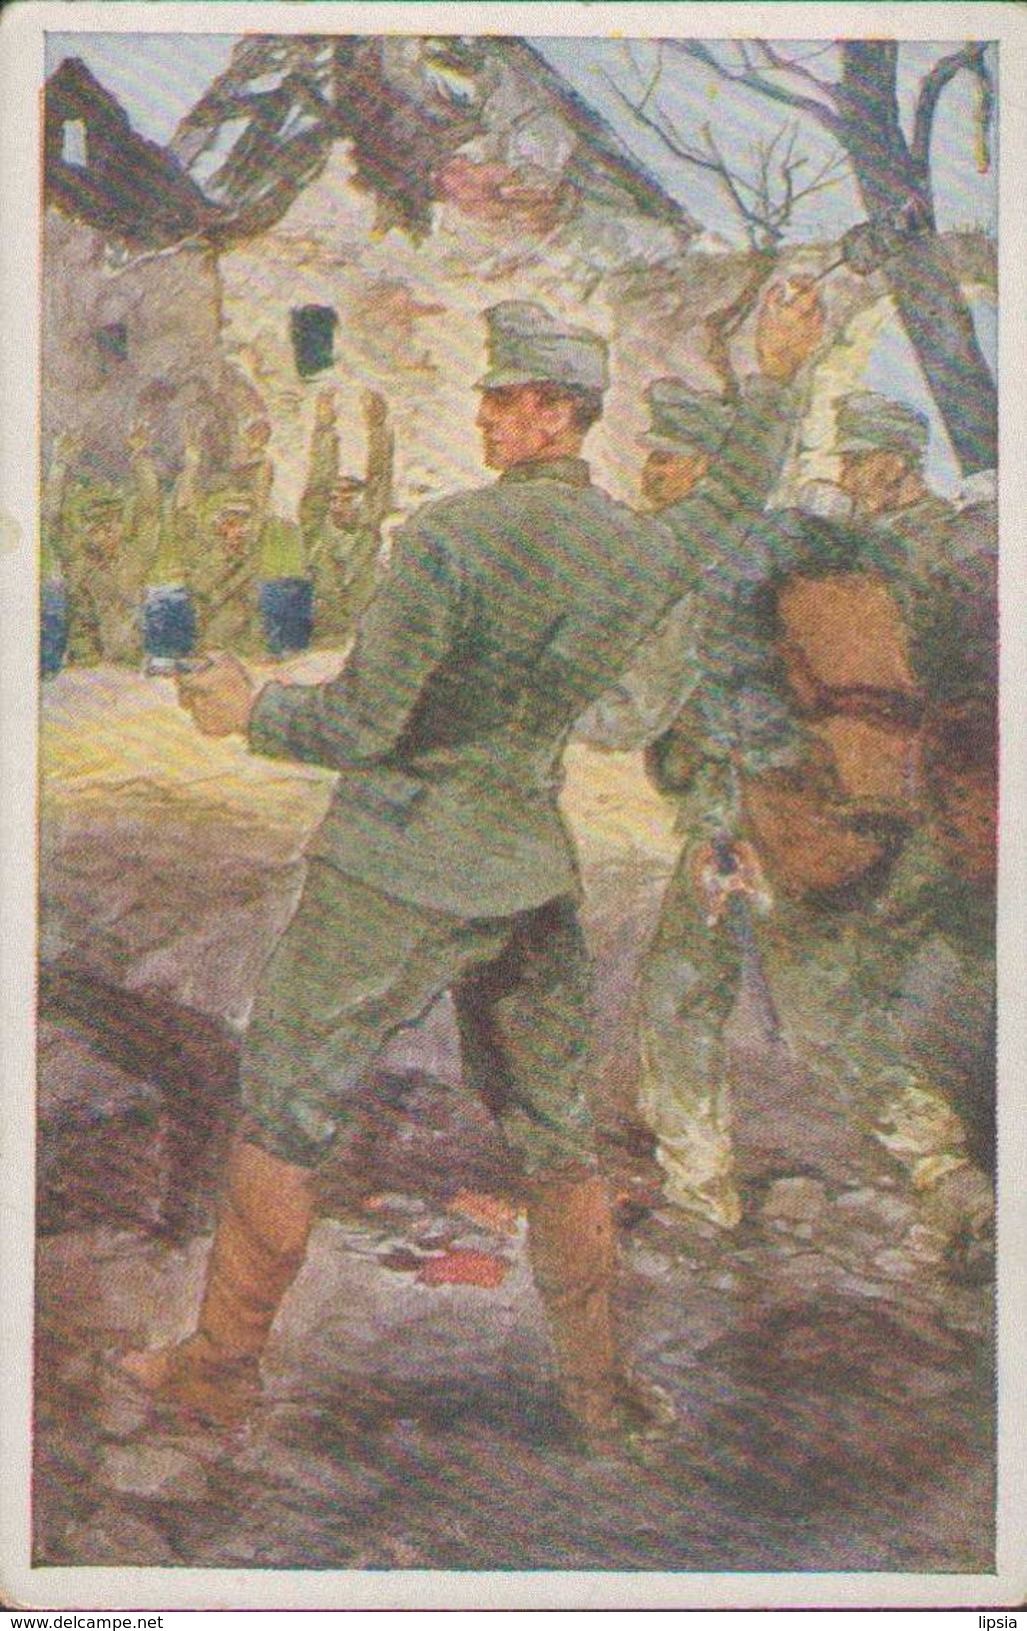 K.u.k. Soldaten Im Kampf, Rotes-Kreuz Postkarte, Kriegsfürsorgeamt, Goldenes Buch Der Armee, Militär, Weltkrieg - Guerra 1914-18